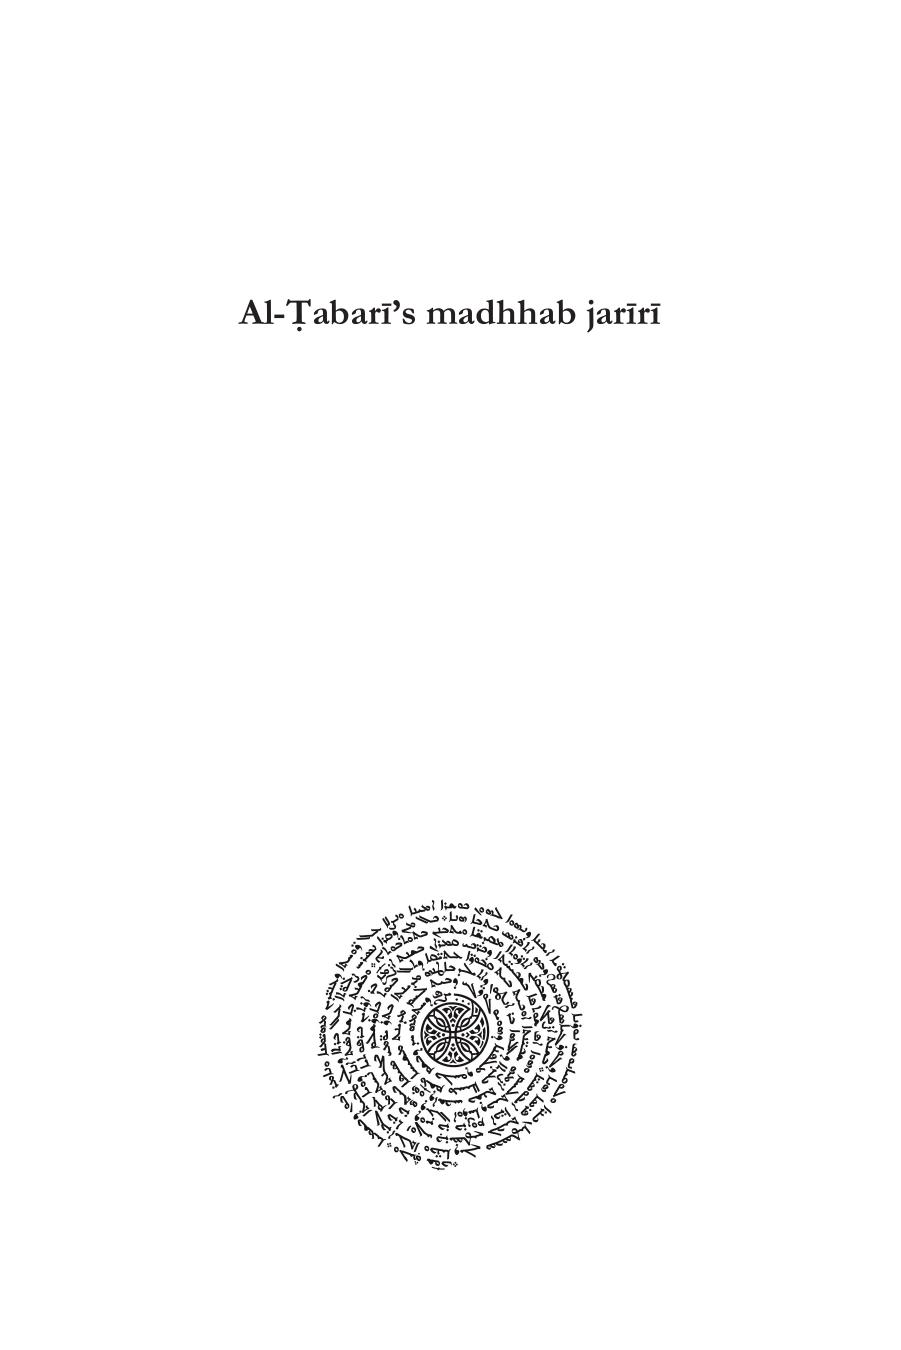 Al-á¹¬abarÄ«âs madhhab jarÄ«rÄ«: A Paradigm of Natural Law and Natural Rights for the Ê¿Abbasid Caliphate (Islamic History and Thought) by Ulrika Mårtensson